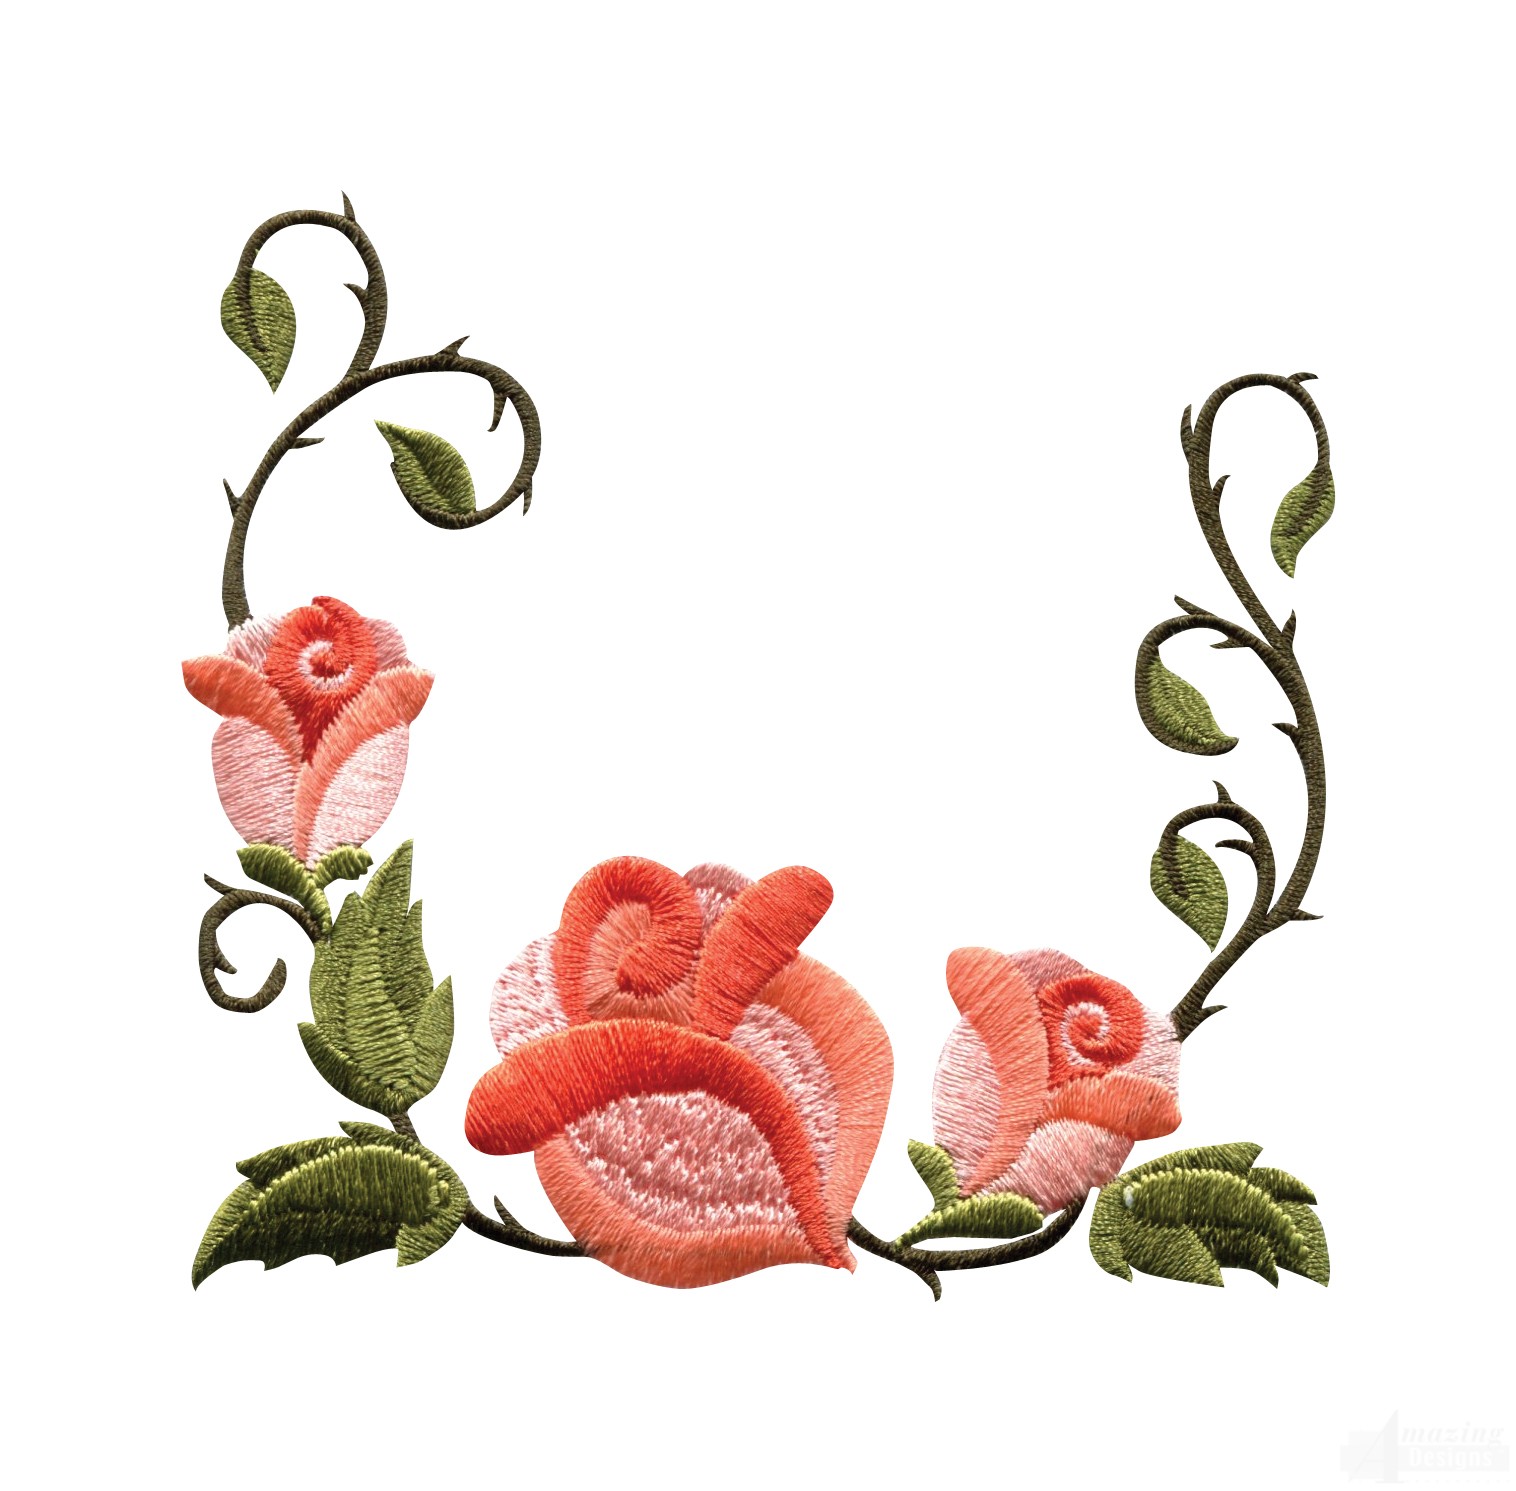 Rose Flower Border Design